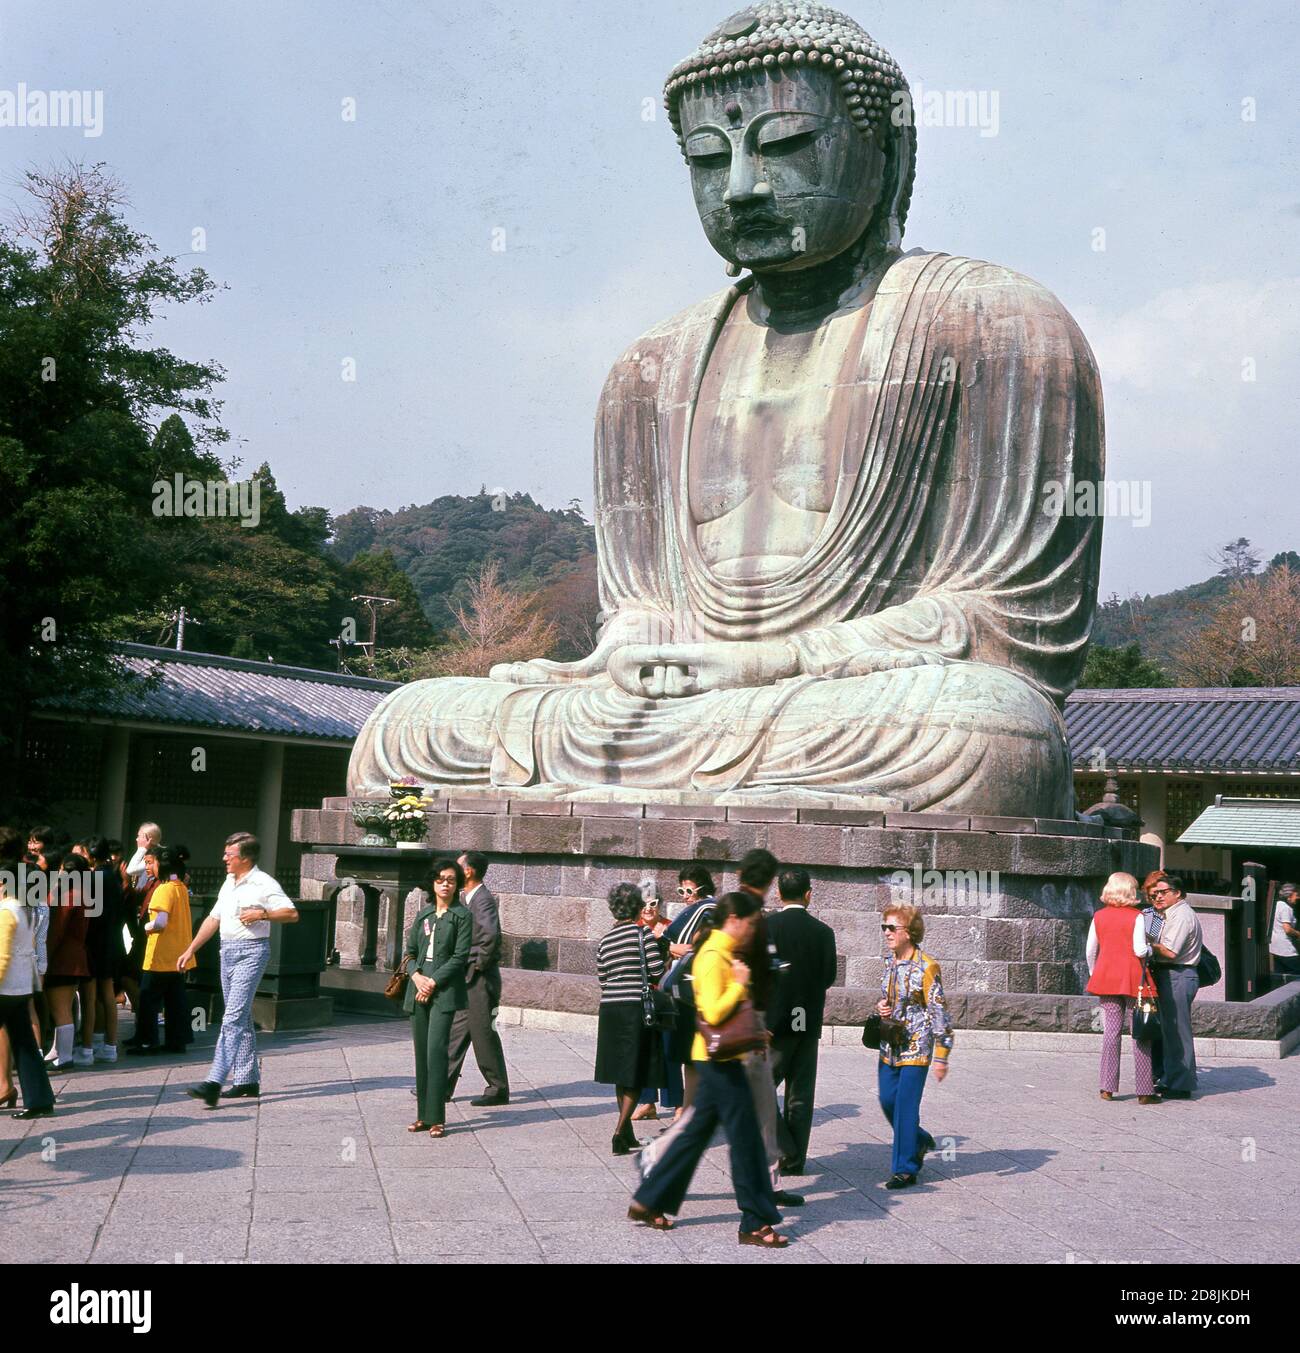 Années 1960, historique, visiteurs au temple bouddhiste de Kotoku-in, Kamakura, Kanagawa, Japon, maison du Daibutsu ou Grand Bouddha, une statue de bronze géant et l'une des attractions touristiques les plus visitées du pays. La statue date du XIIIe siècle et est le deuxième plus grand Bouddha de bronze au Japon. Banque D'Images